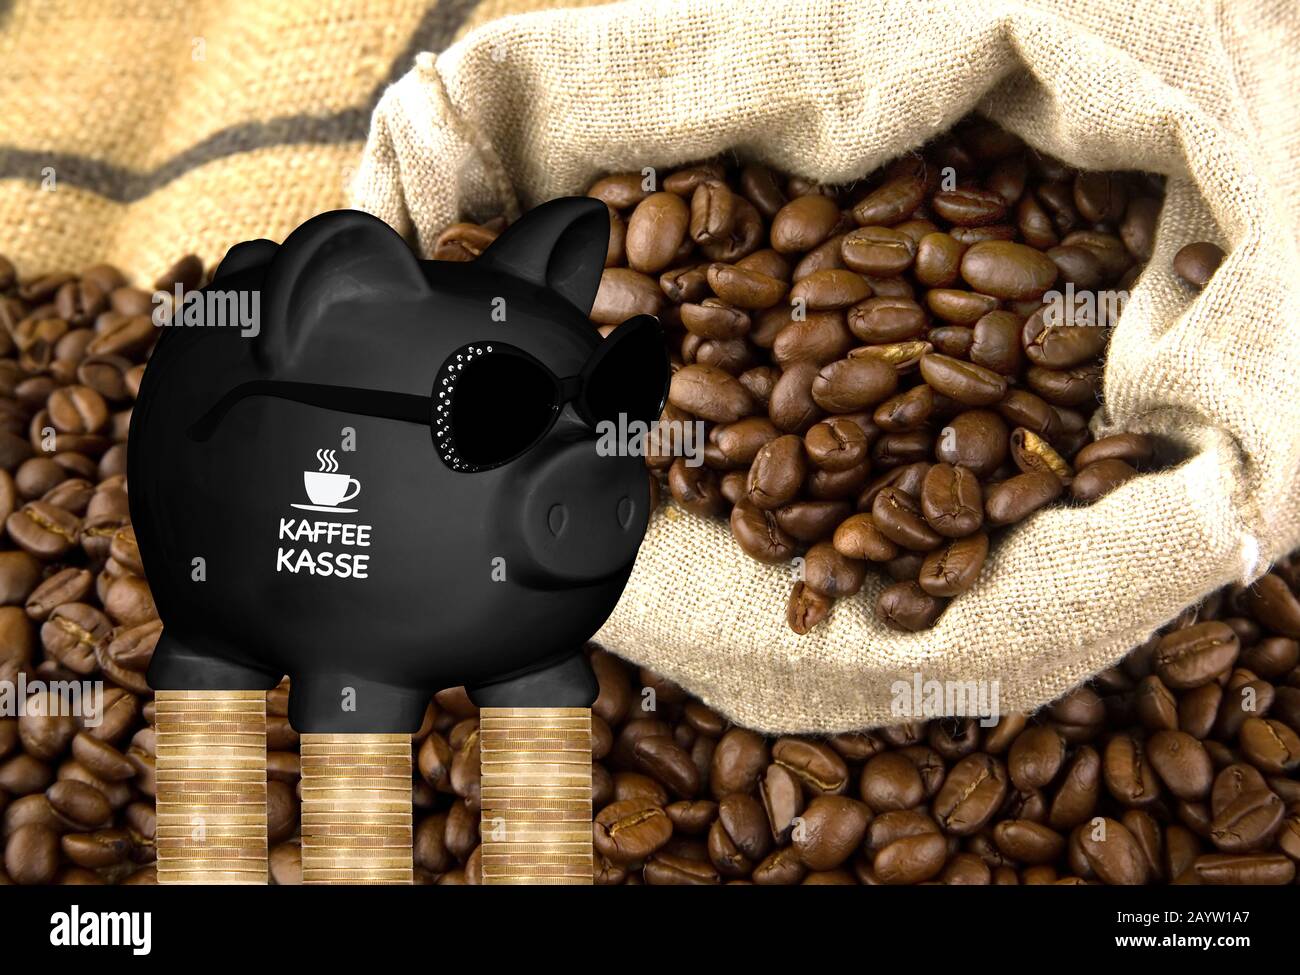 Banco negro piggy con gafas de sol con las letras Kaffeekasse, kitty, granos de café y pilas de monedas en el fondo, componiendo Foto de stock